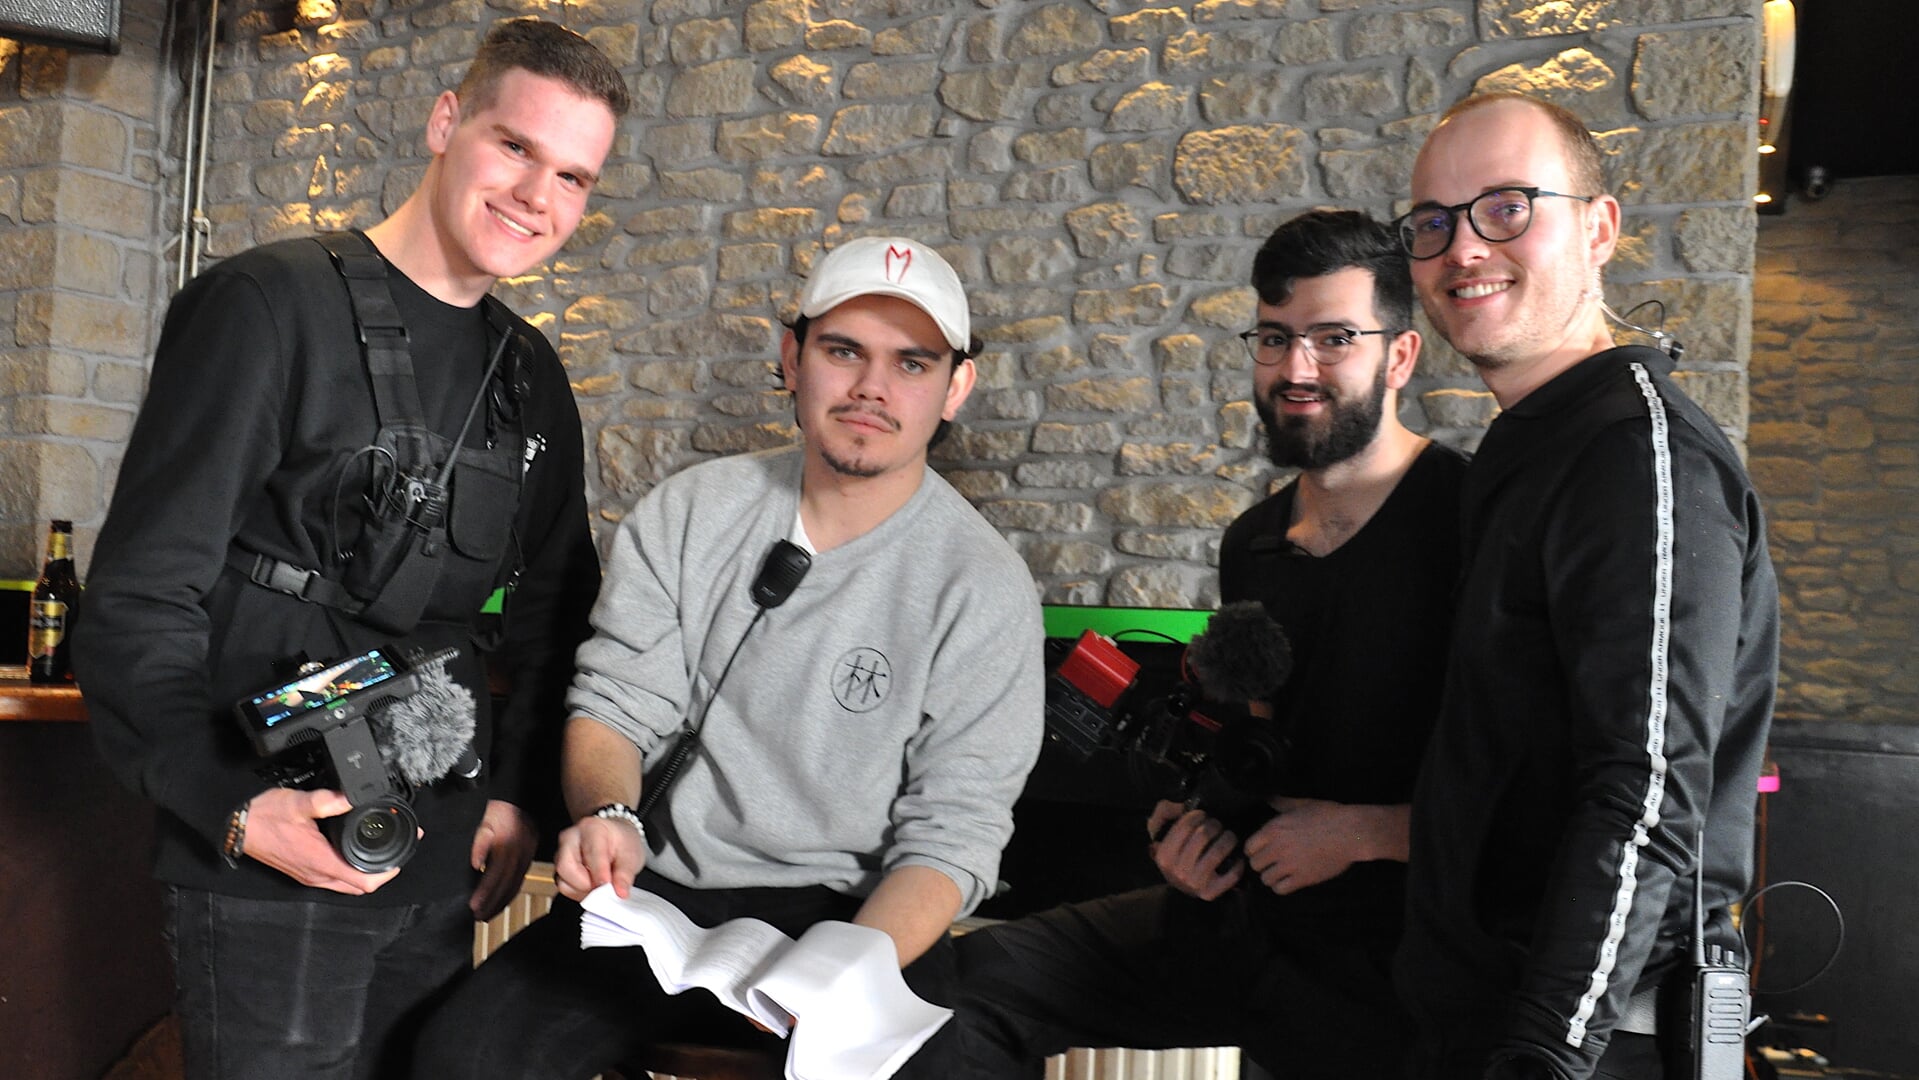 Troy de Bruin, Casper Liem, Sander Booms en Rens Reichard willen met hun shortfilm de boer op bij filmfestivals.